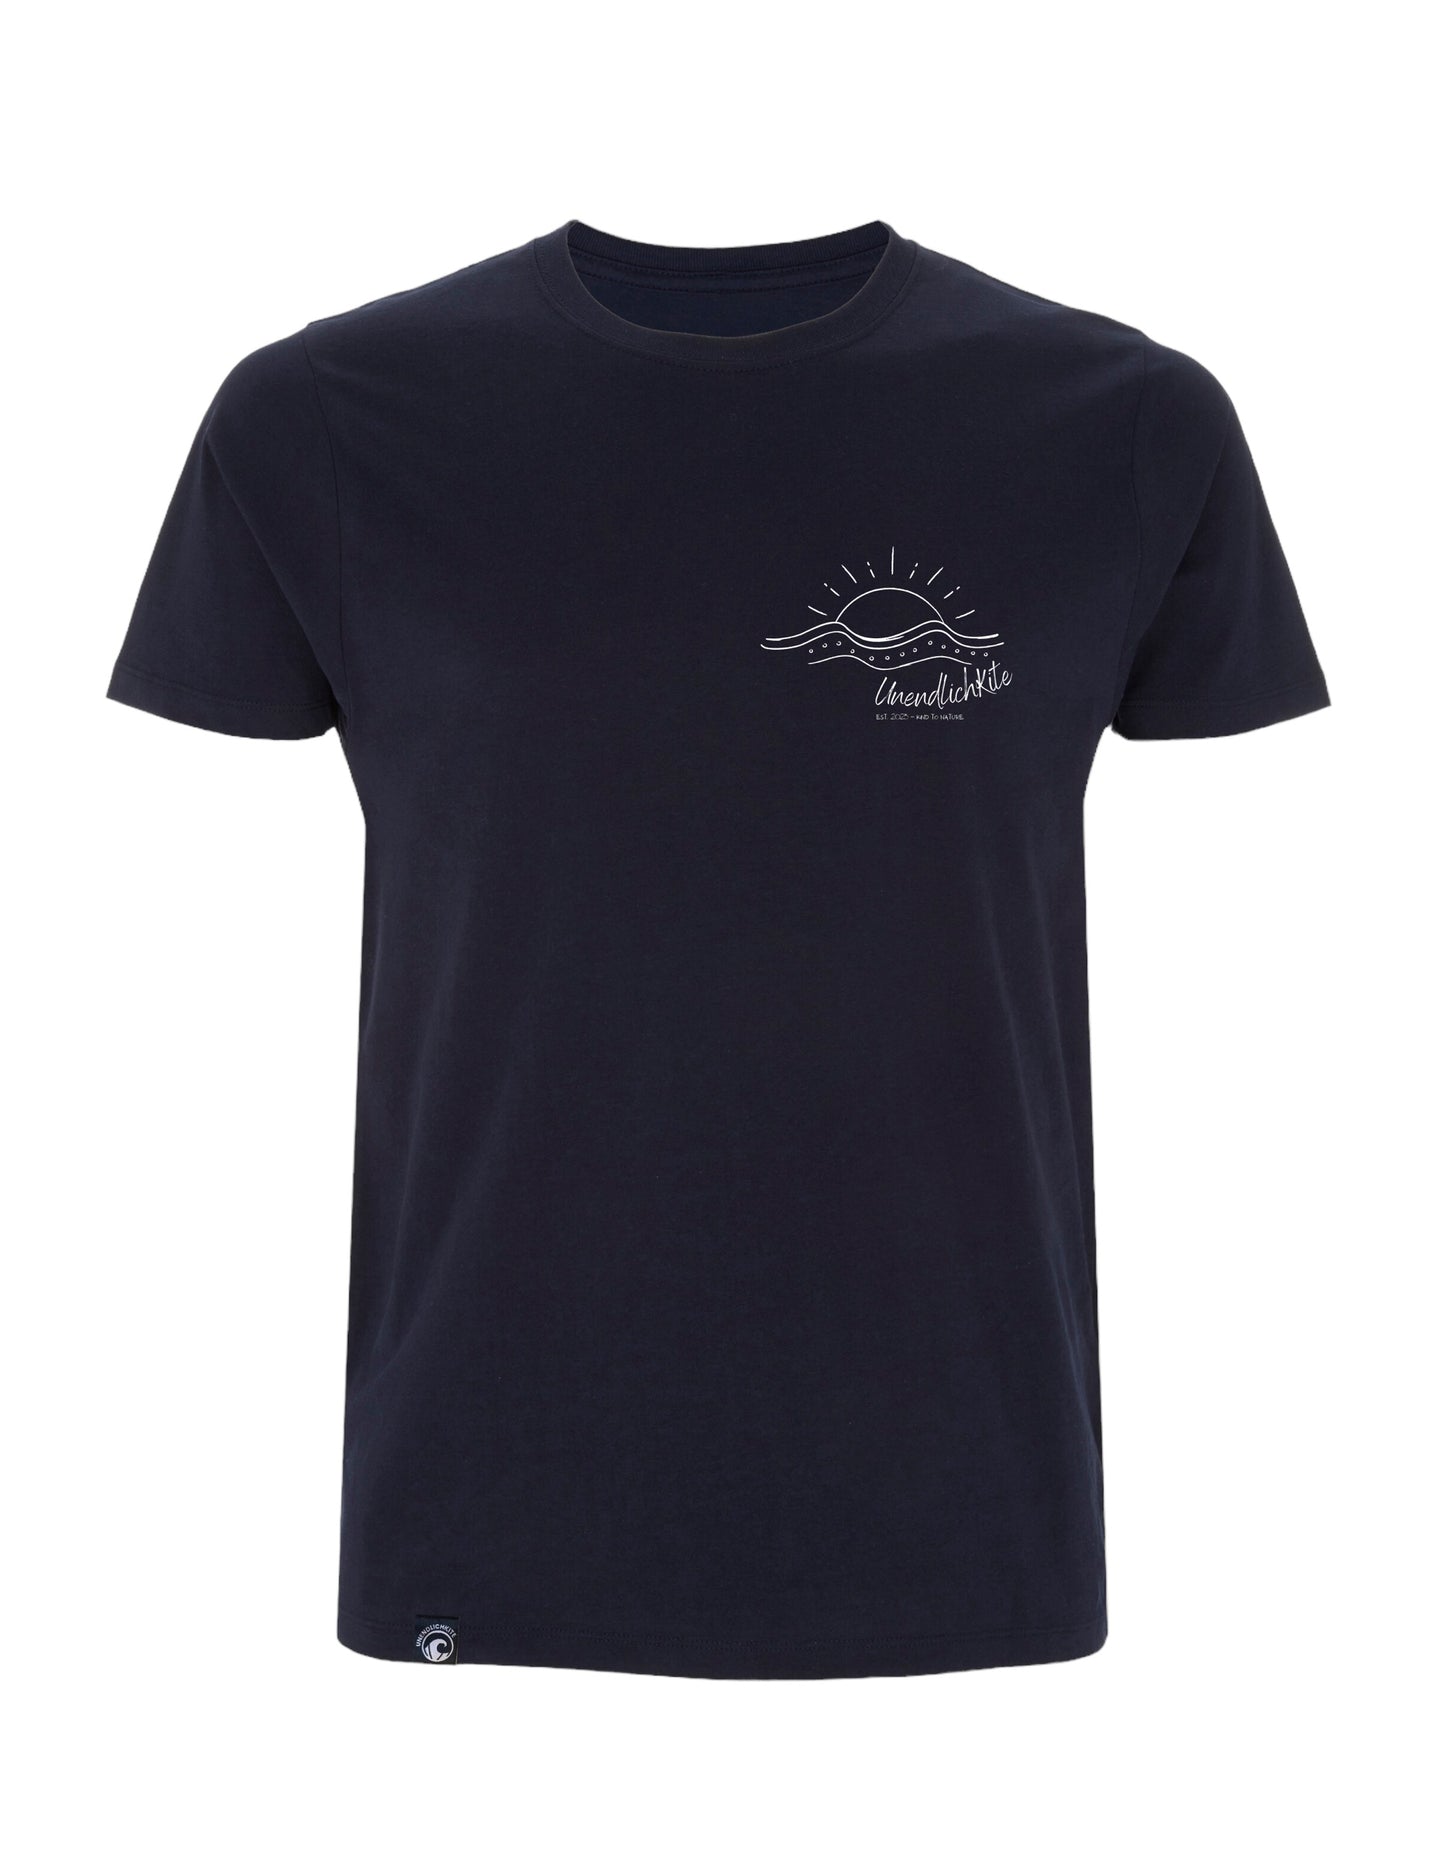 dunkelblaues T‘Shirt mit Brustaufdruck Zeichnung Horizont